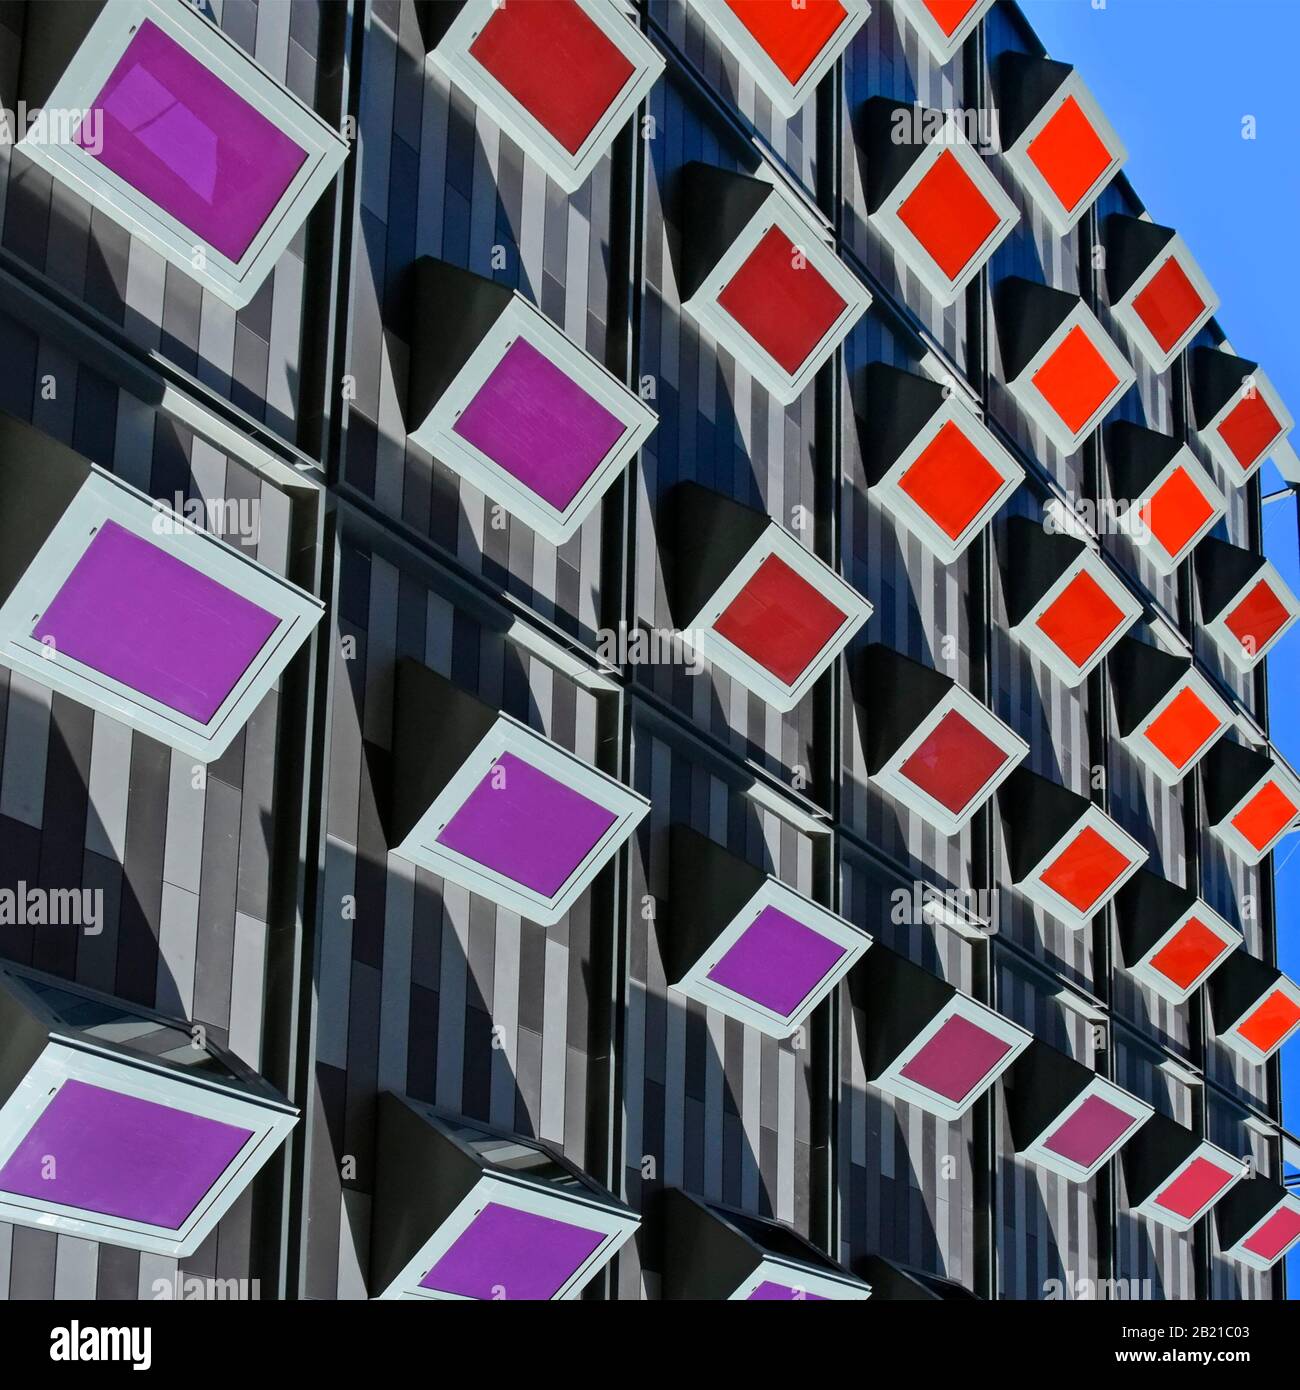 Invertierte moderne Gebäudestruktur Fassade schafft eine bunte imaginäre Architektur abstraktes Muster Hintergrund von zurückziehenden Rechtecken London UK Stockfoto